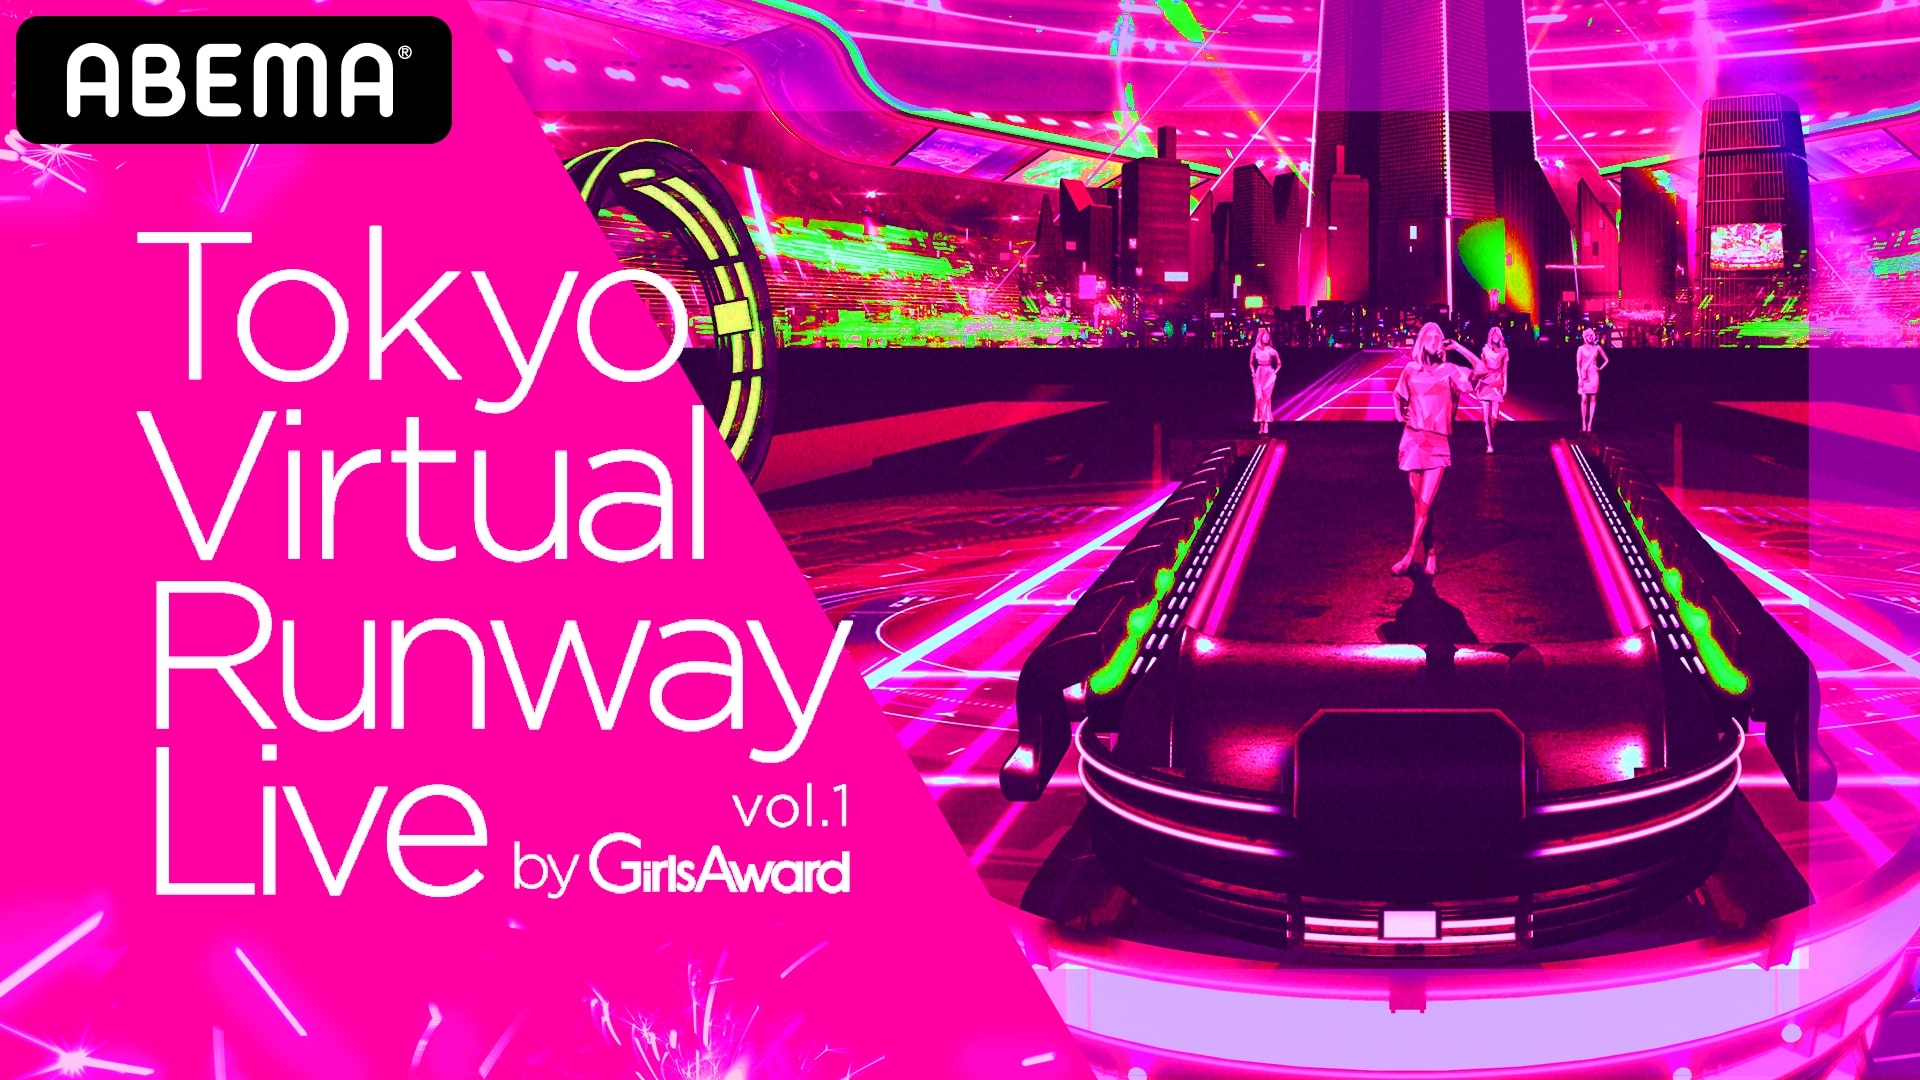 史上初！フルバーチャル空間によるファッションショー&ライブイベント「Tokyo Virtual Runway Live by GirlsAward」開催決定！